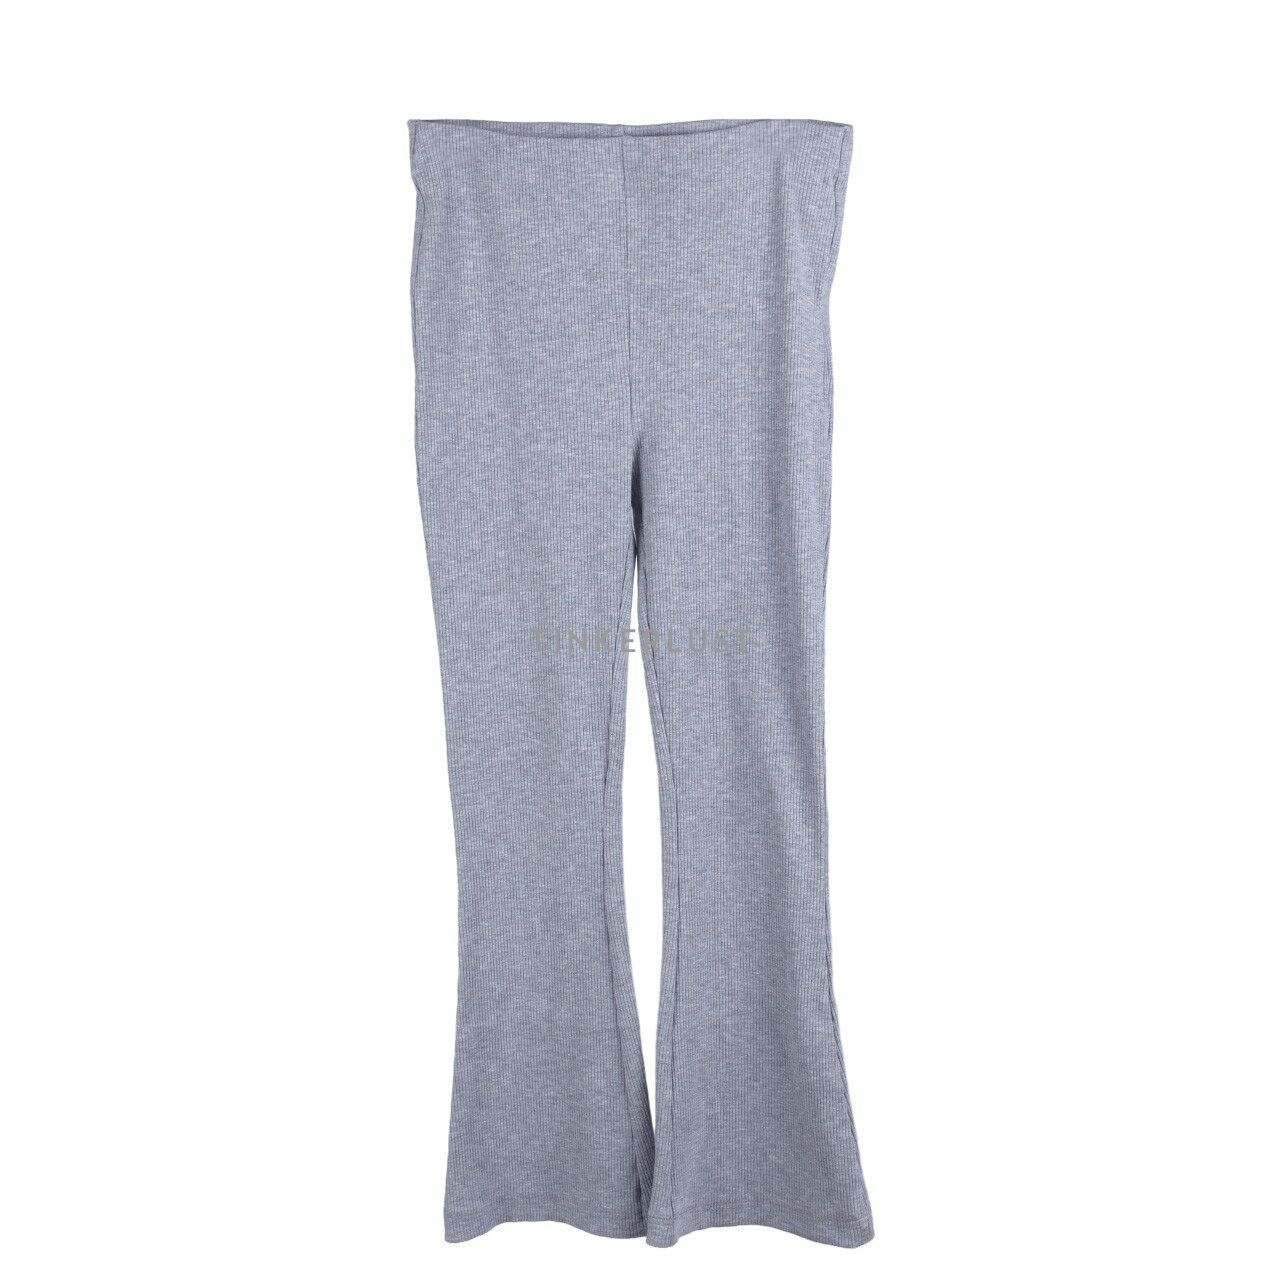 H&M Grey Knit Long Pants